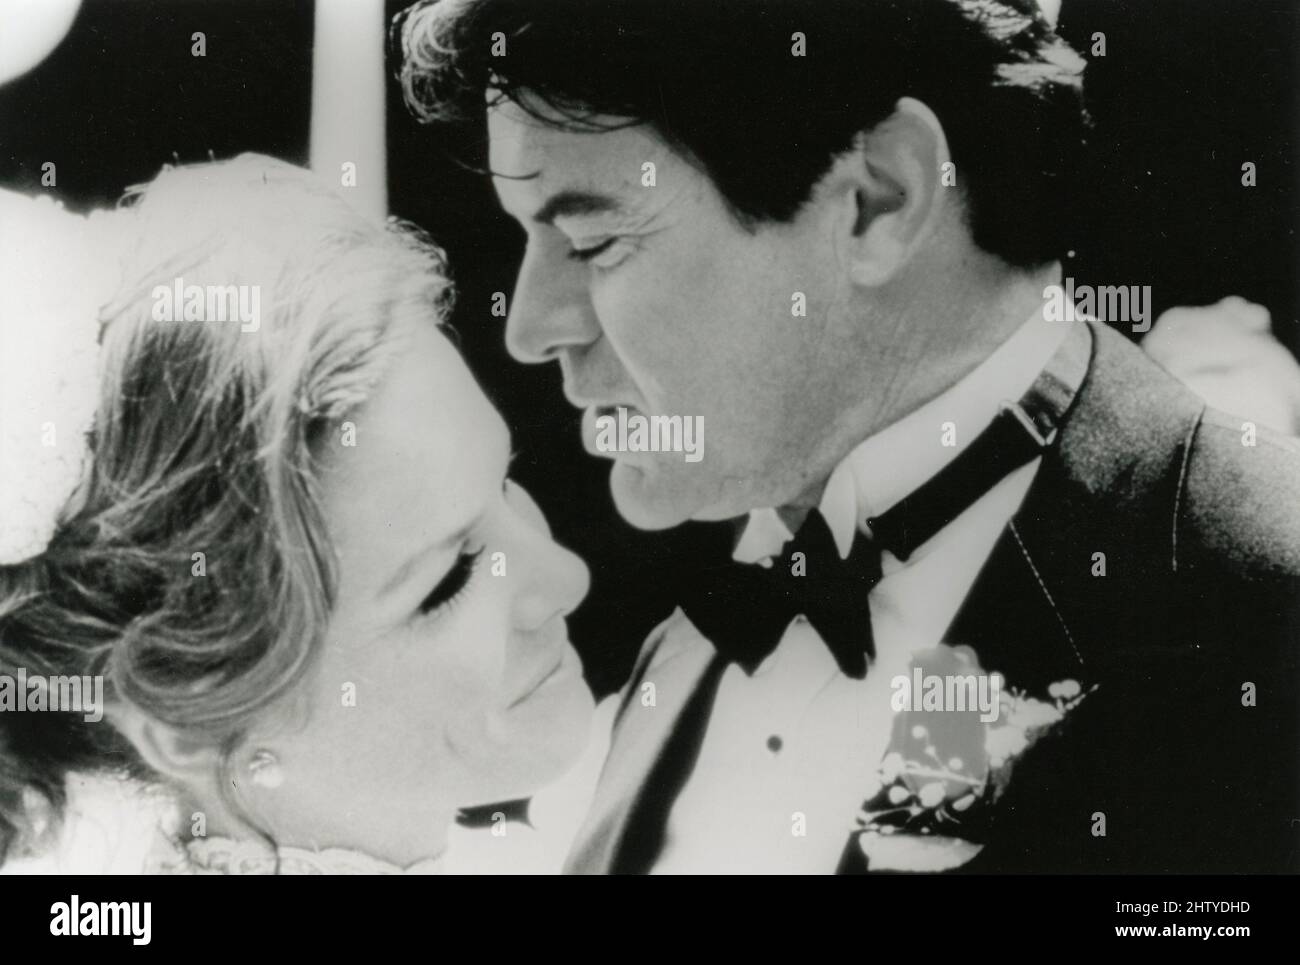 L'attore Robert Urich e l'attrice Georgia emelin nel film Deadly Relations, USA 1993 Foto Stock